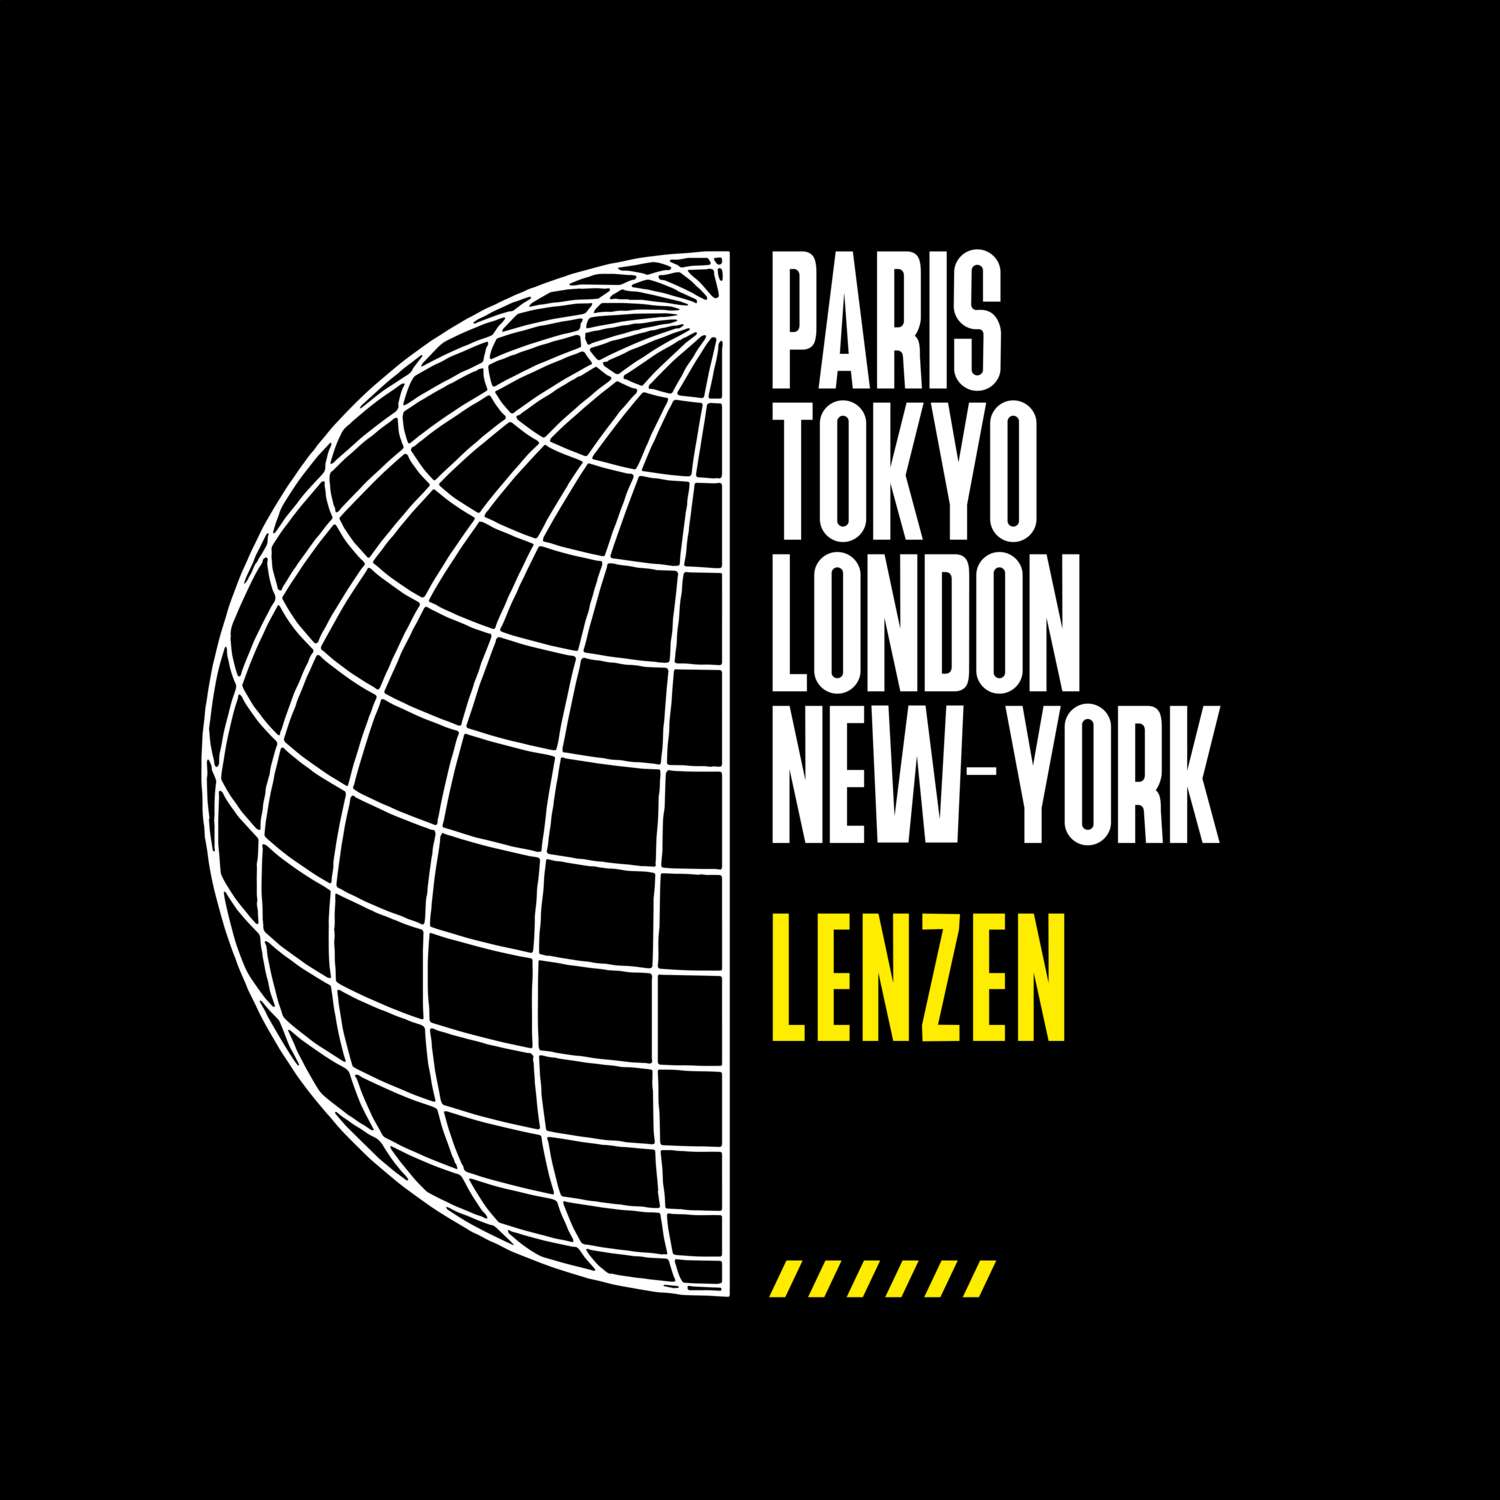 Lenzen T-Shirt »Paris Tokyo London«